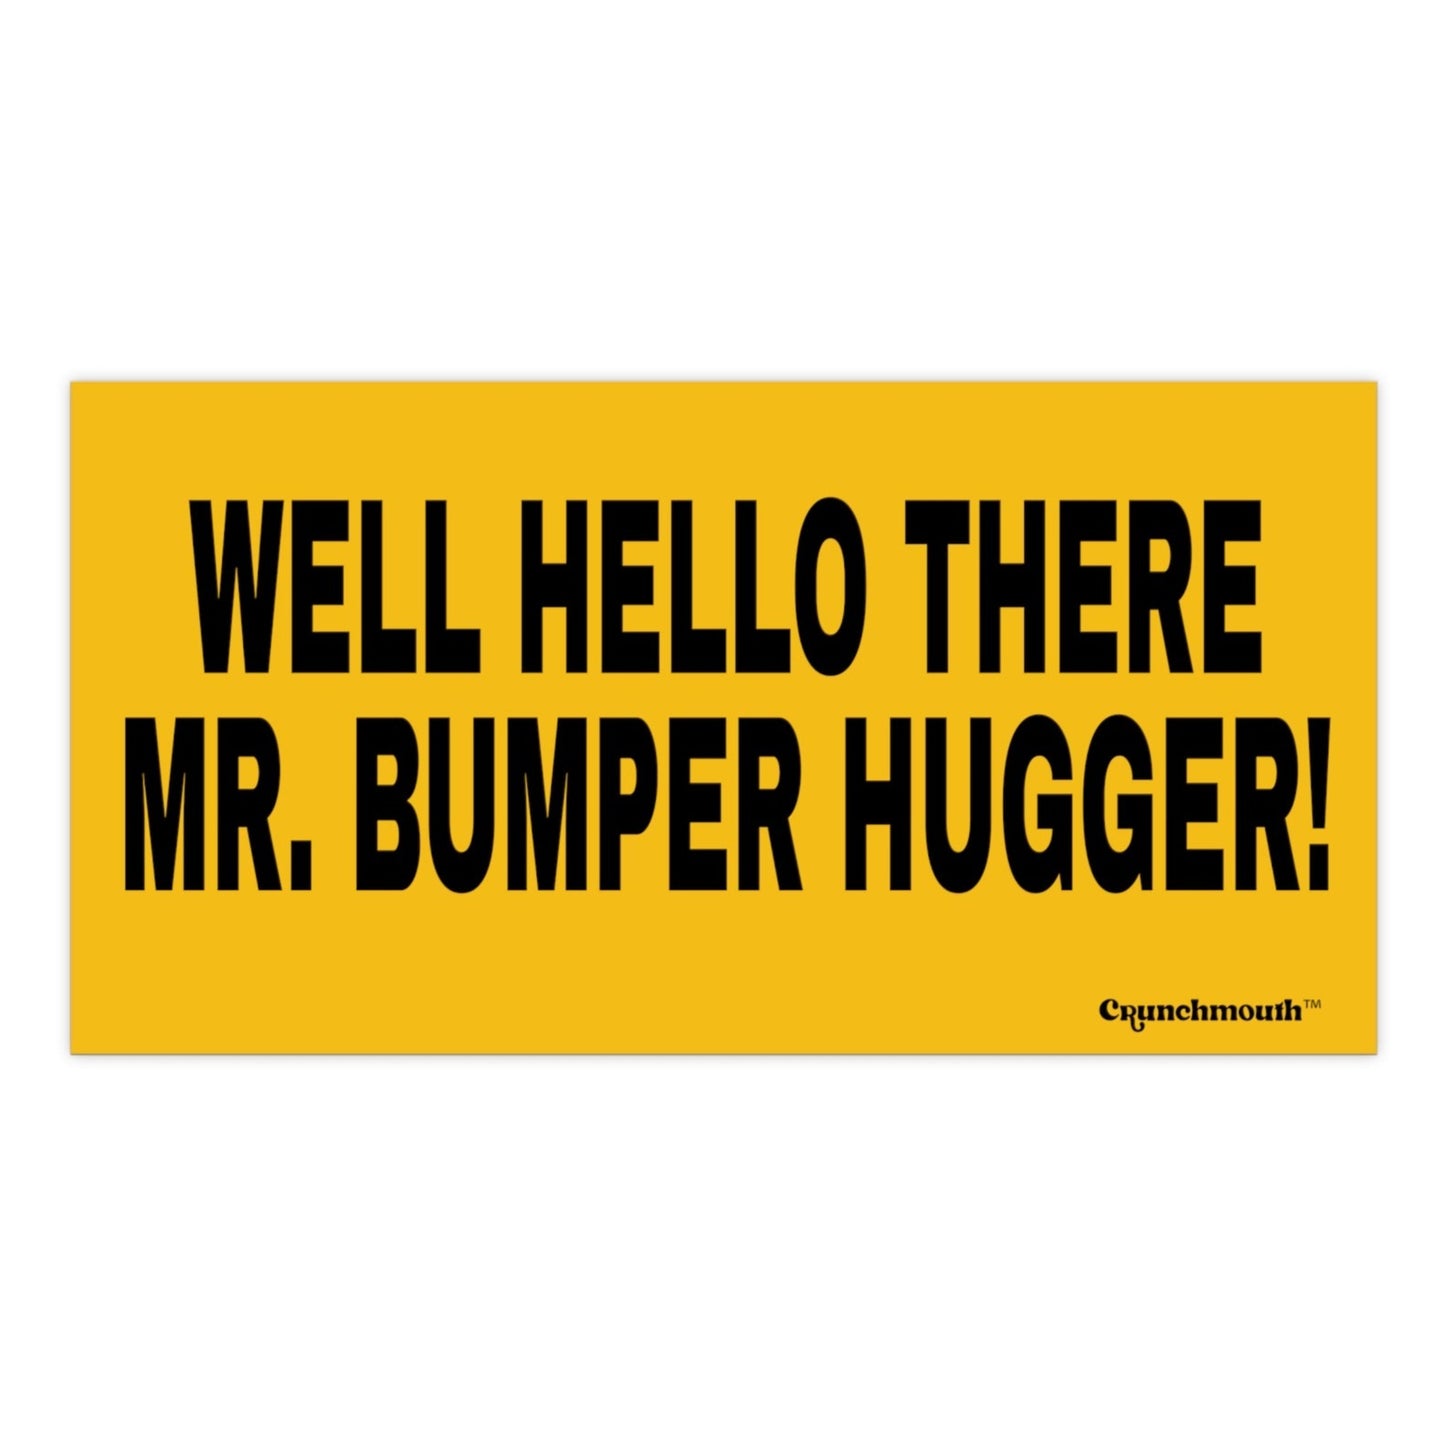 well hello there mr bumper hugger bumper sticker funny retro road trip